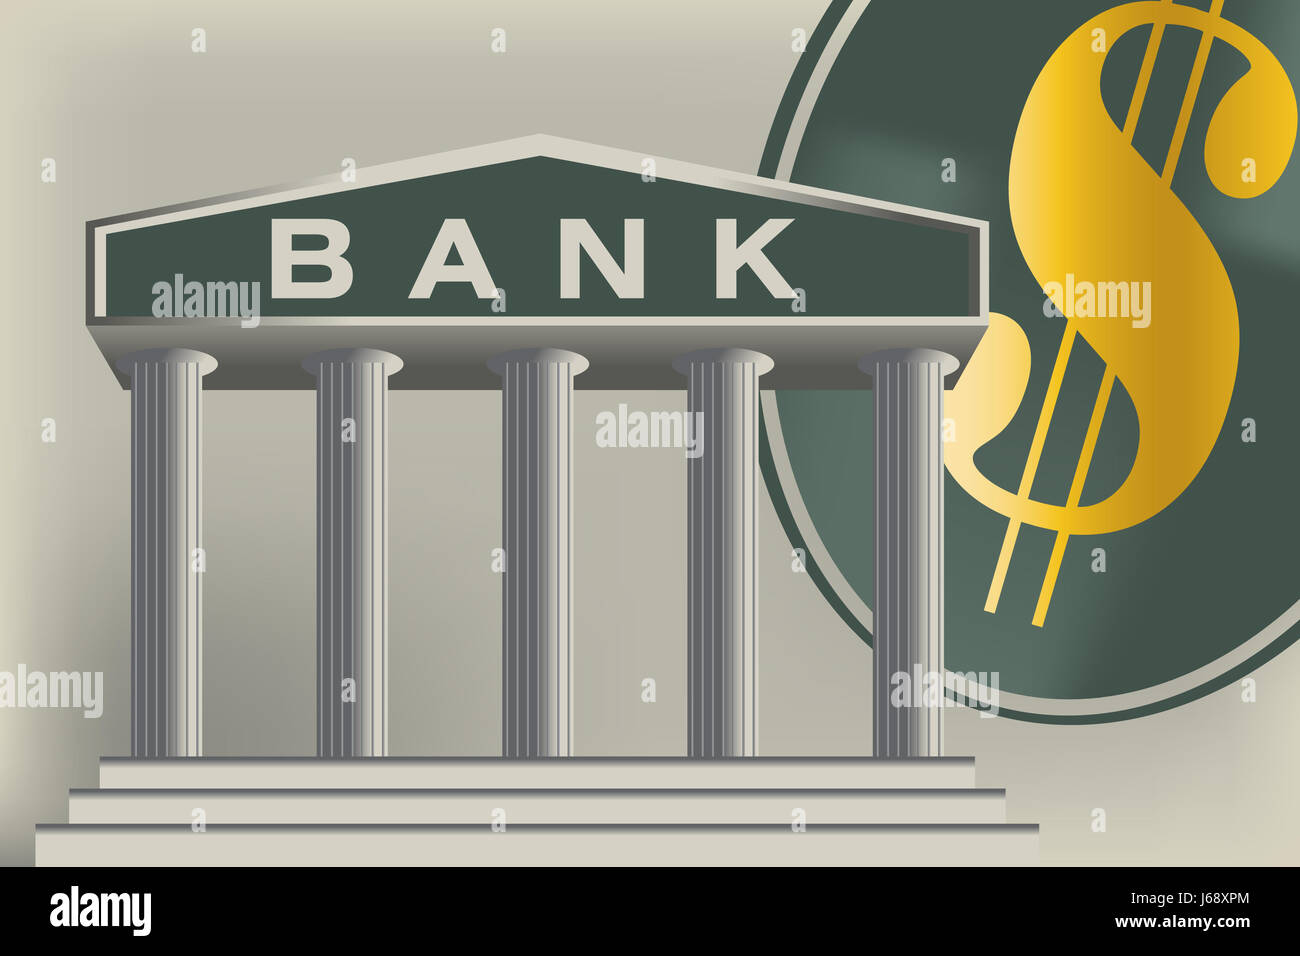 Банк txt. Банк рисунок. Банк картинки для презентации. Тема банк. Картинки на банковскую тематику.